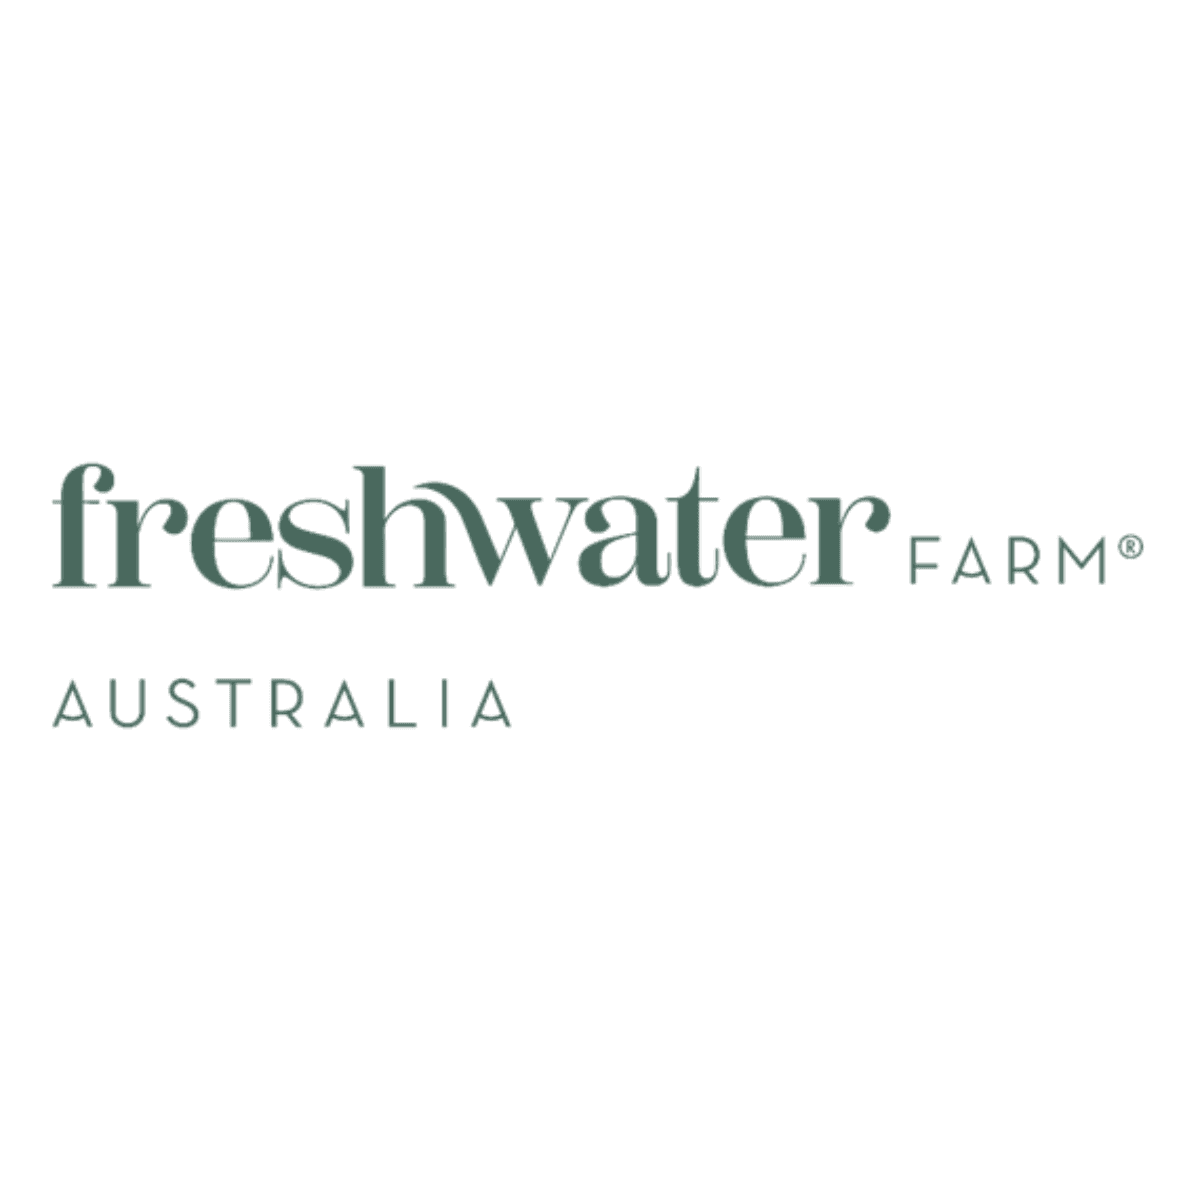 Freshwater Farm